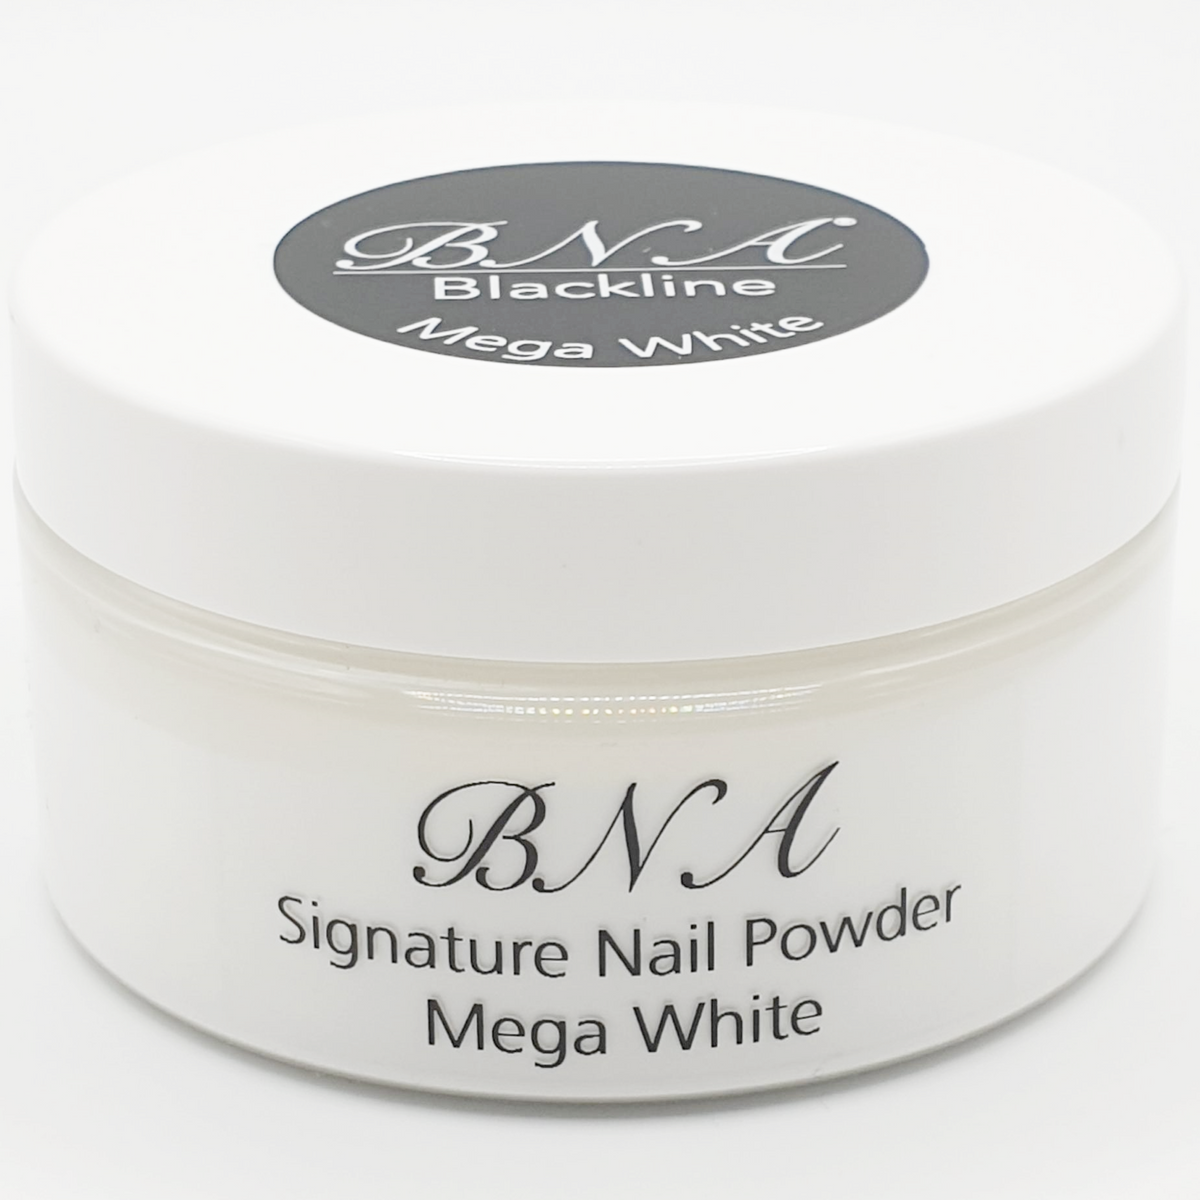 Signature Nail Powder Mega White